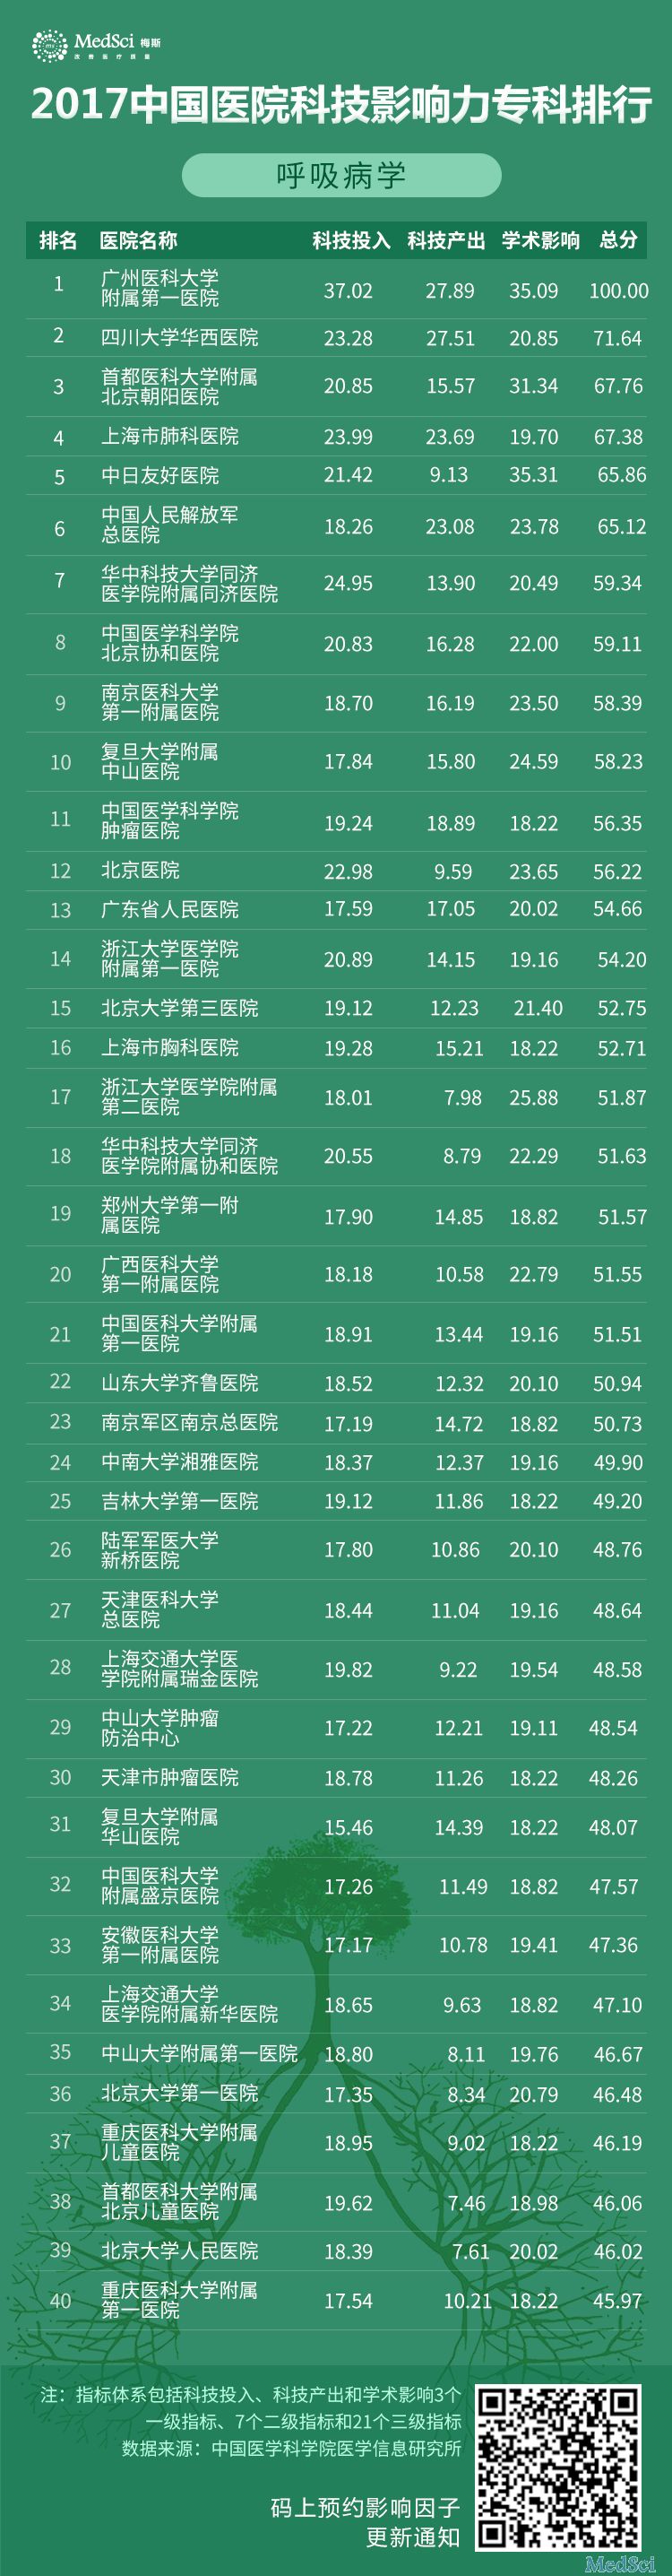 2017中国<font color="red">医院</font><font color="red">科技</font>影响力呼吸病学专科排行